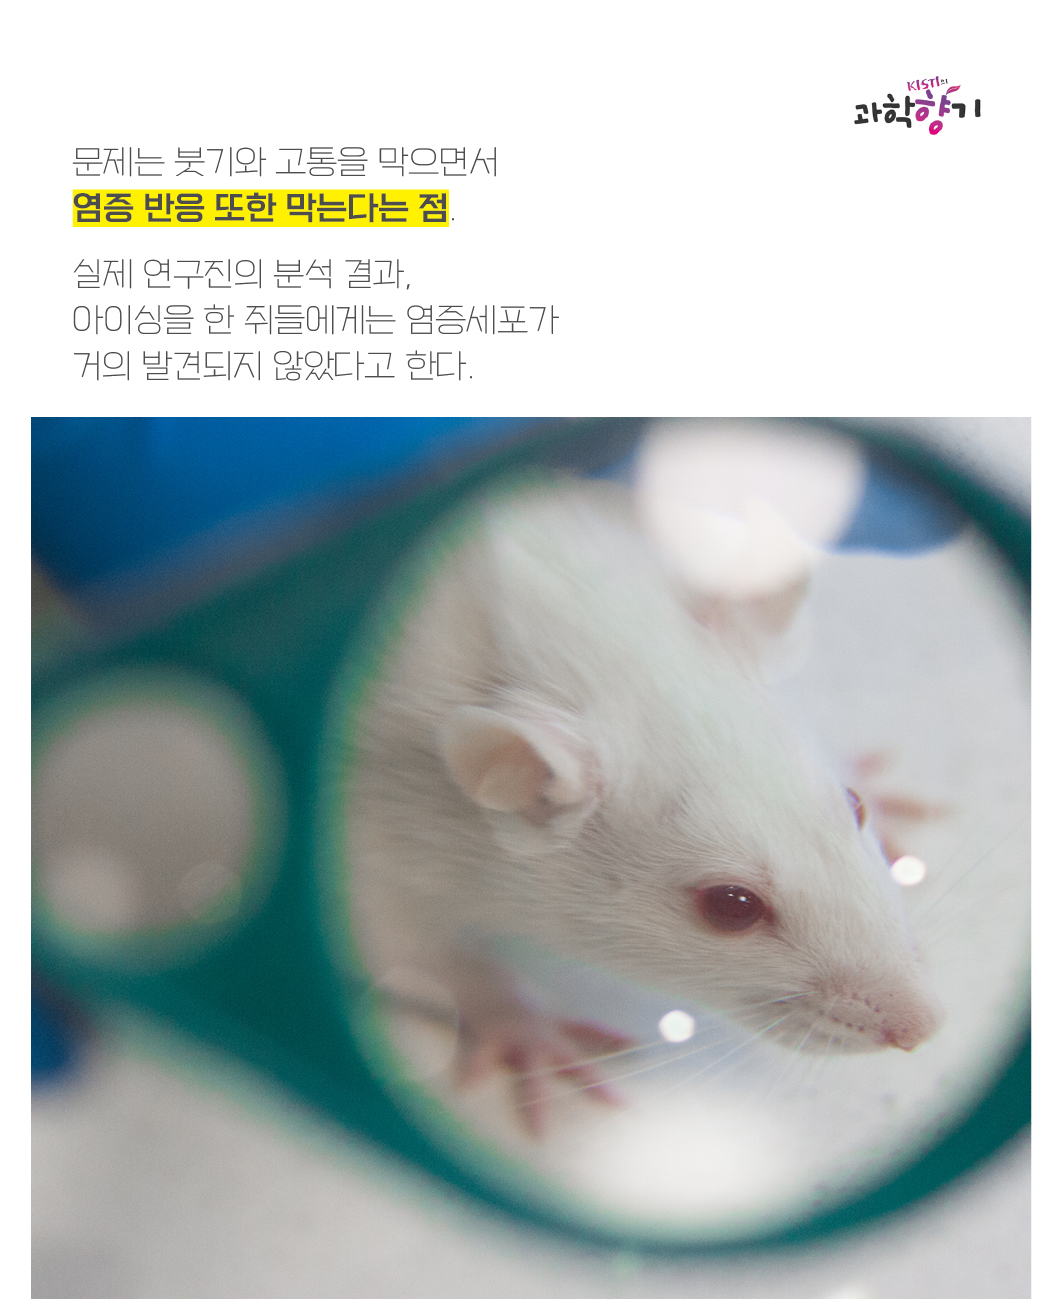 문제는 붓기와 고통을 막으면서 염증 반응 또한 막는다는 점.   실제 연구진의 분석 결과, 아이싱을 한 쥐들에게는 염증세포가 거의 발견되지 않았다고 한다.